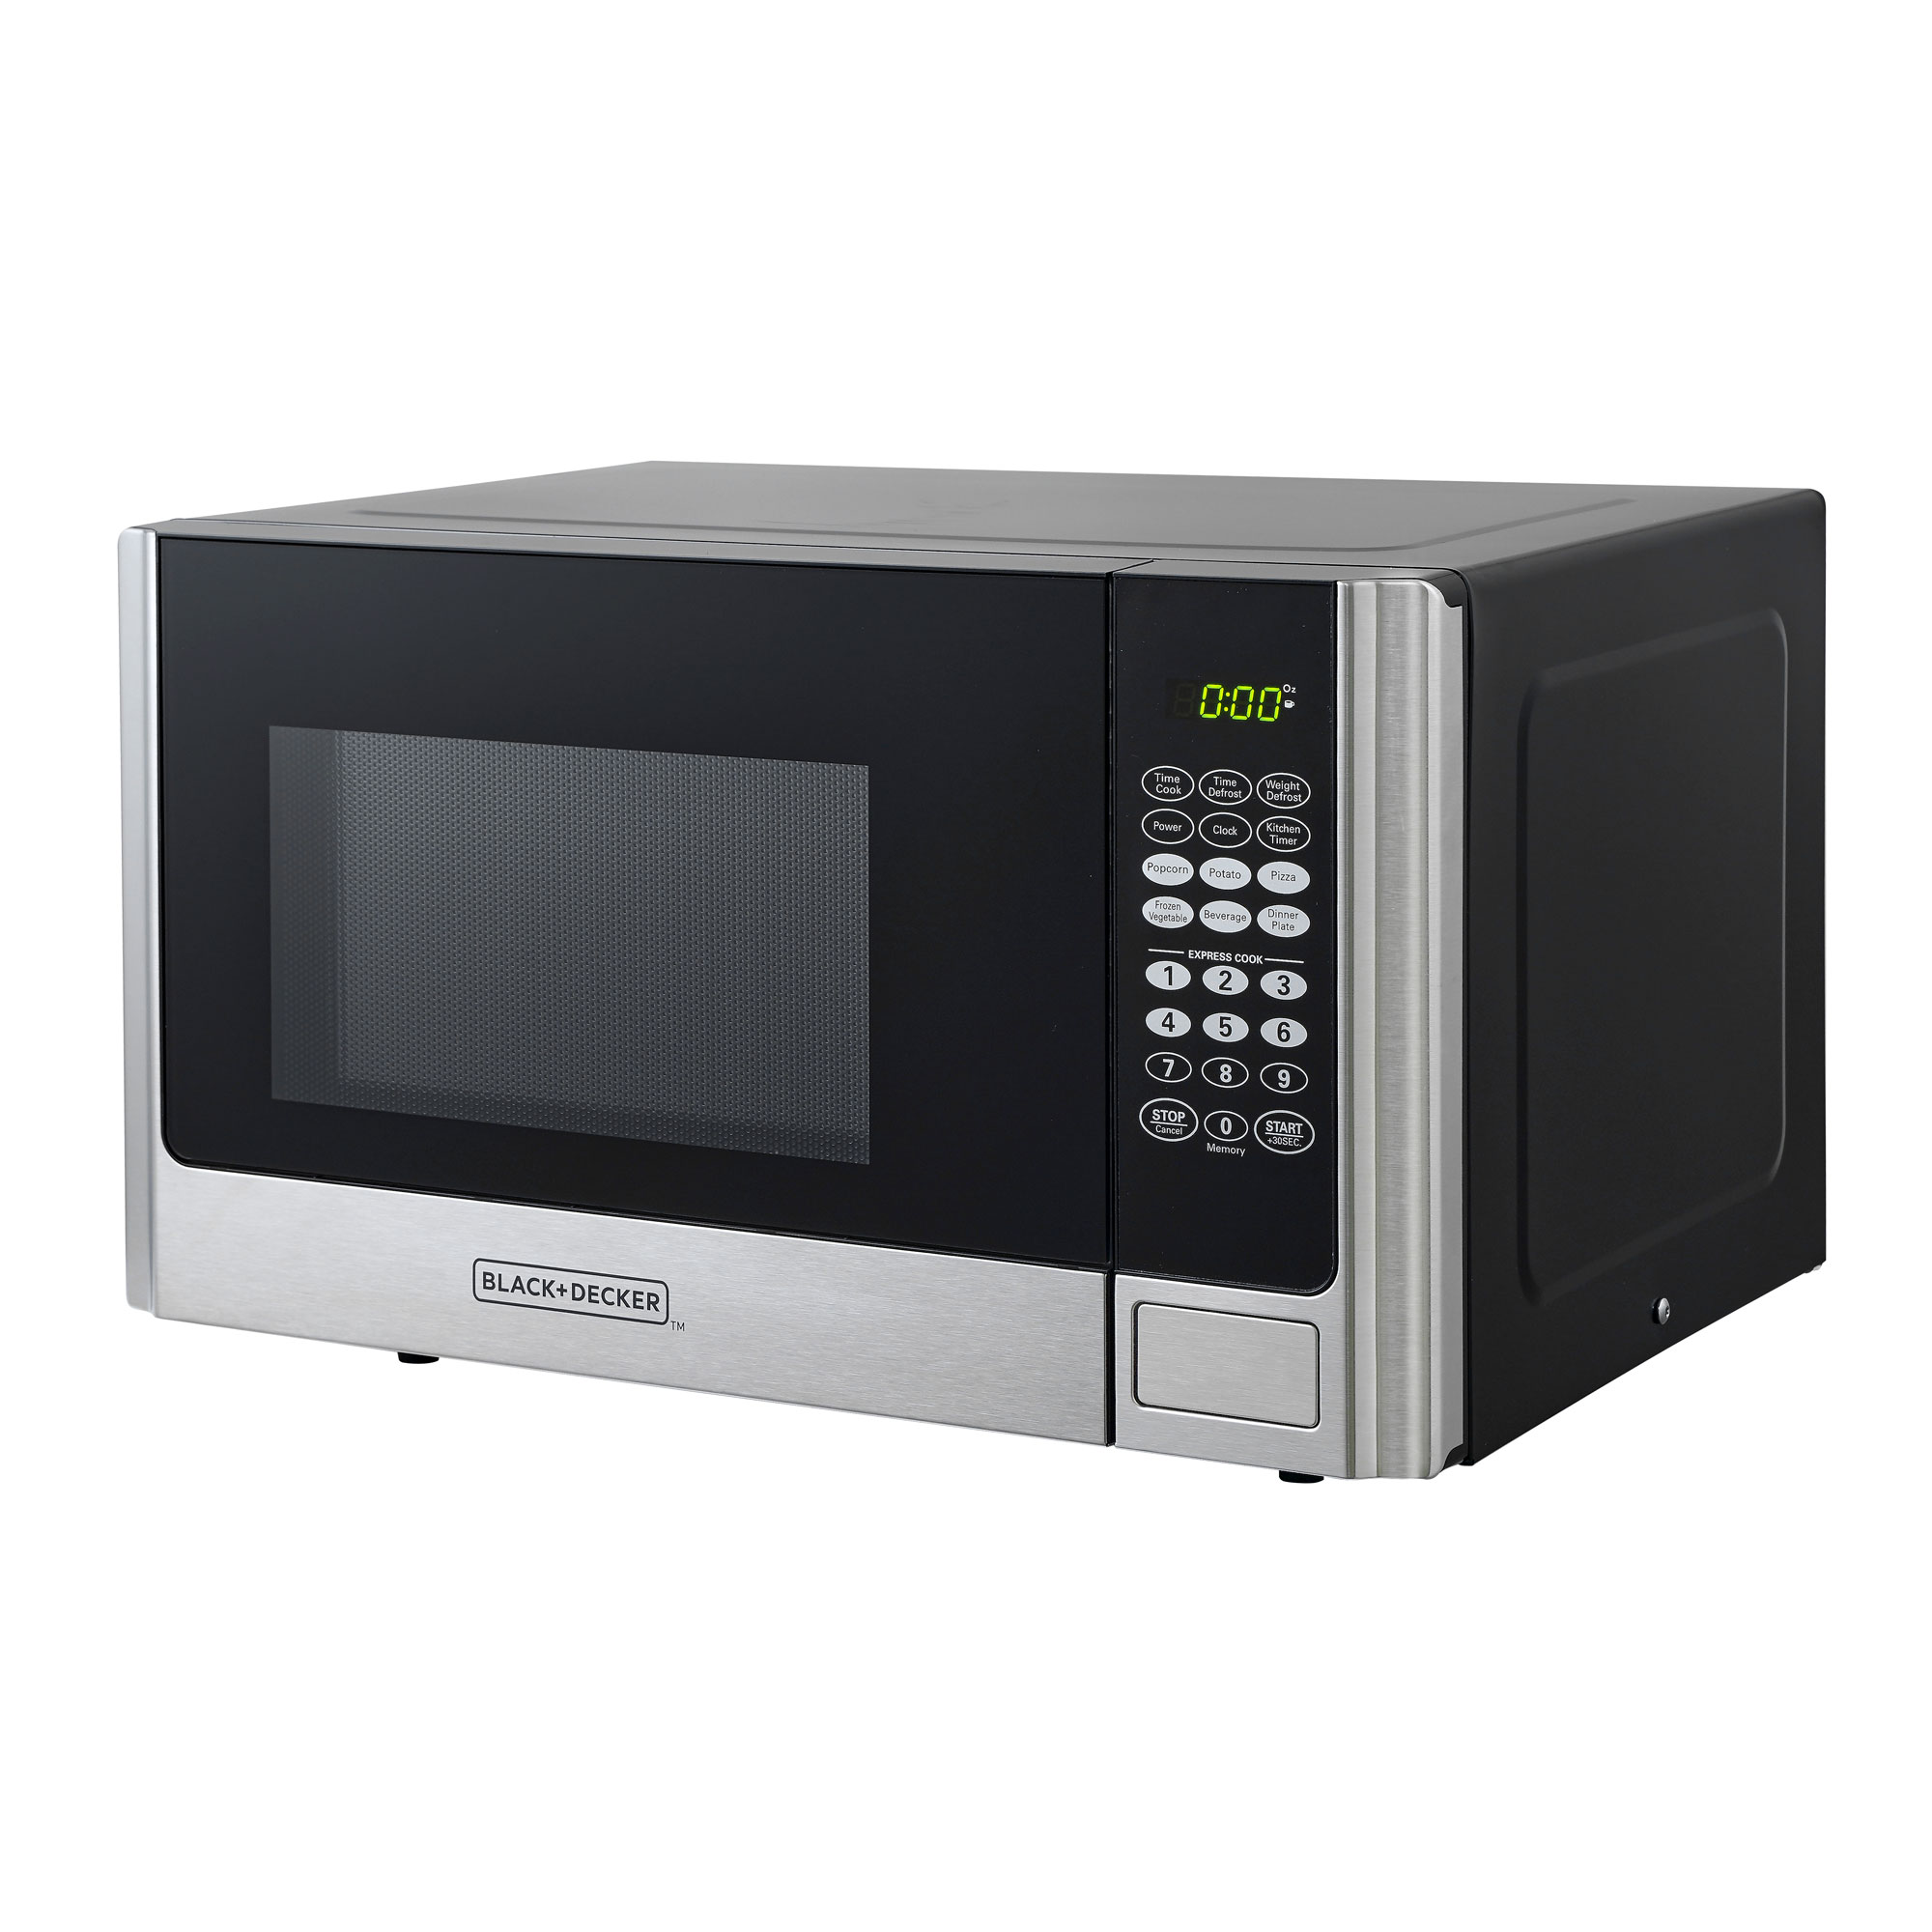 Black and Decker 900 Watt 0.9 Cubic Feet Counter Microwave Oven (Open